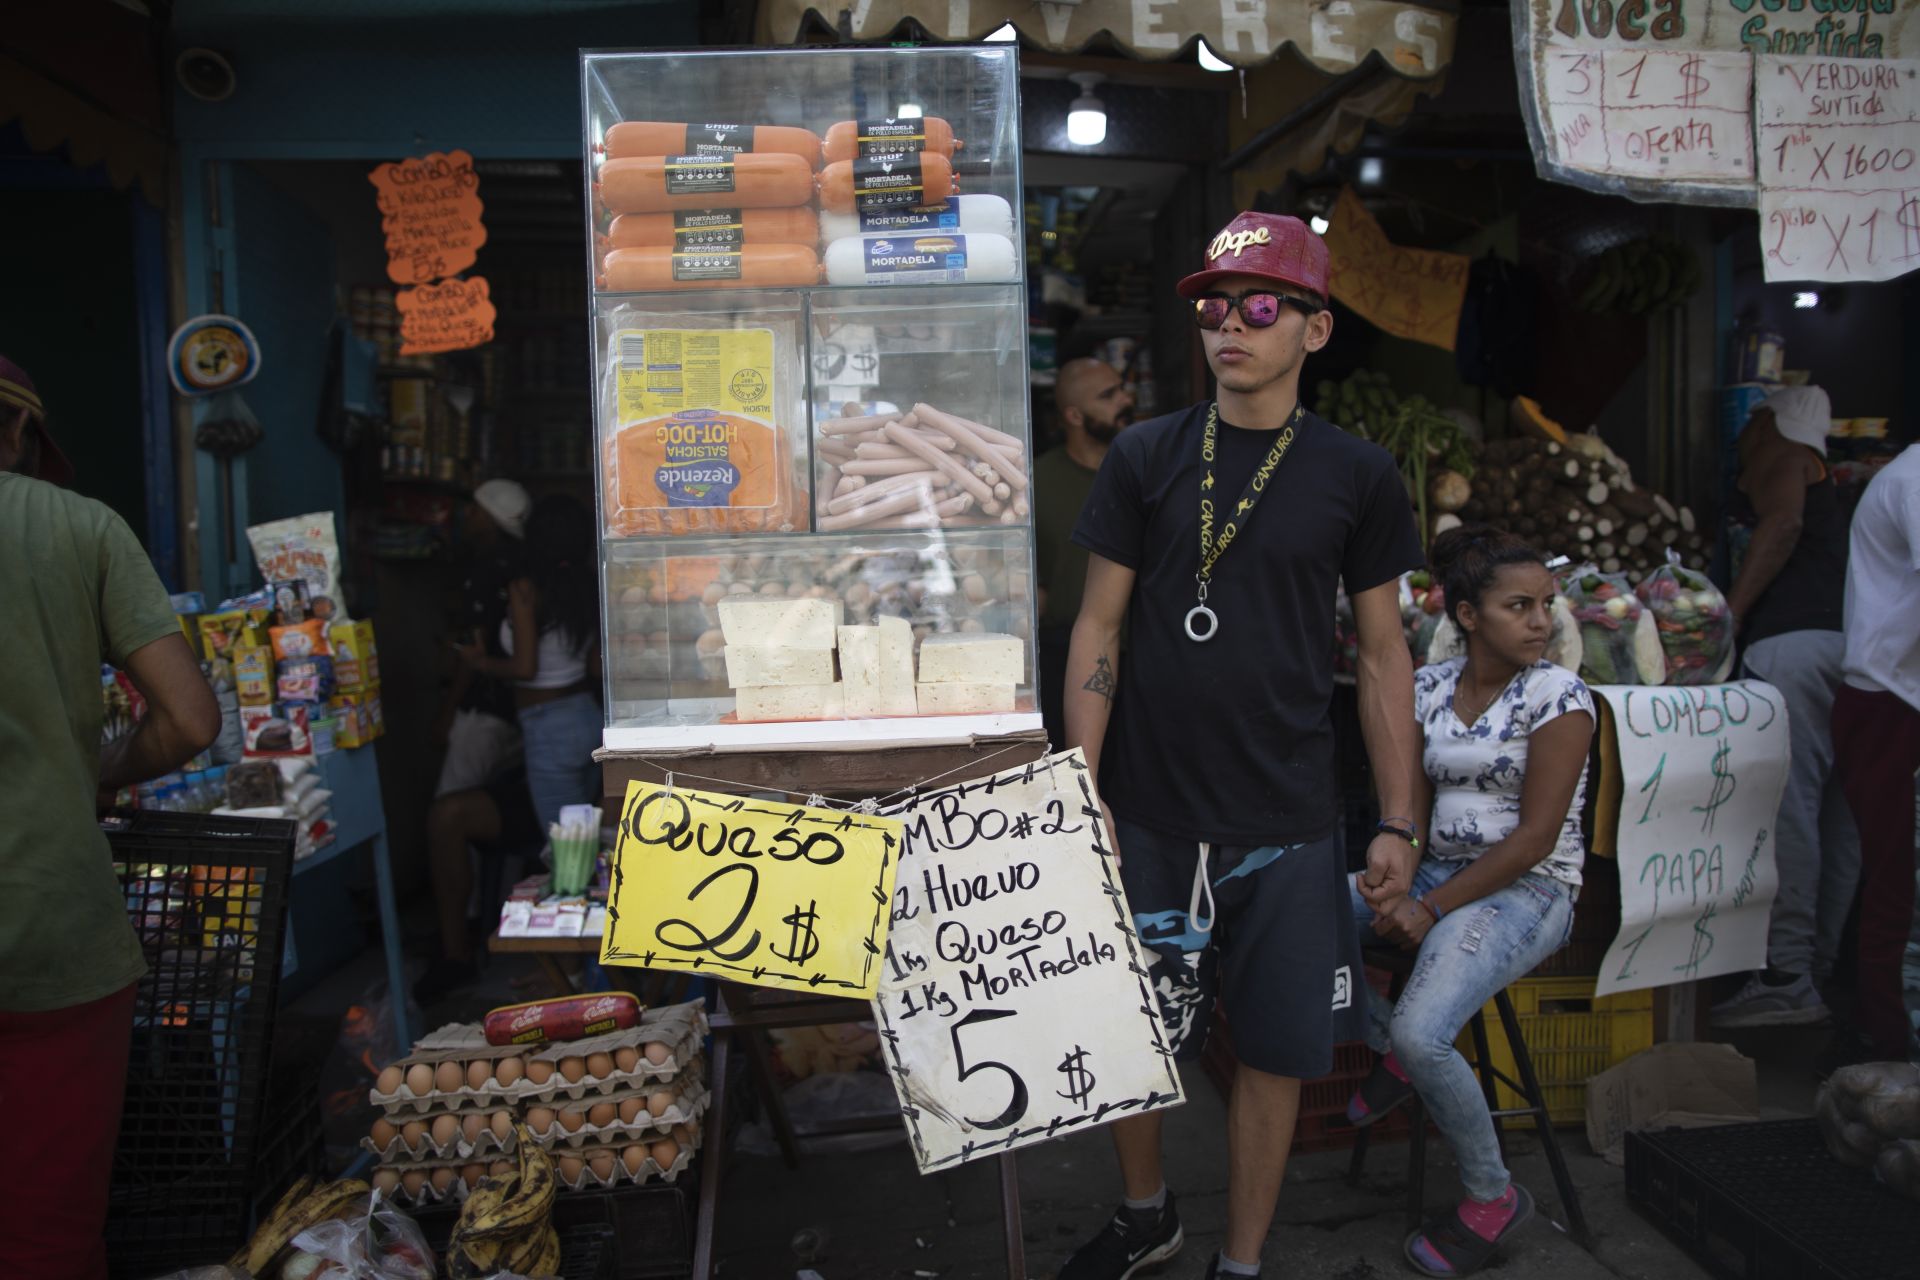 11 юни 2021 г. - Промоции на сирене, яйца и мортадела на пазар в Каракас, Венецуела. Южноамериканската страна опитва да излезе от тежката иикономическа криза, довела до недостиг на редица продукти.